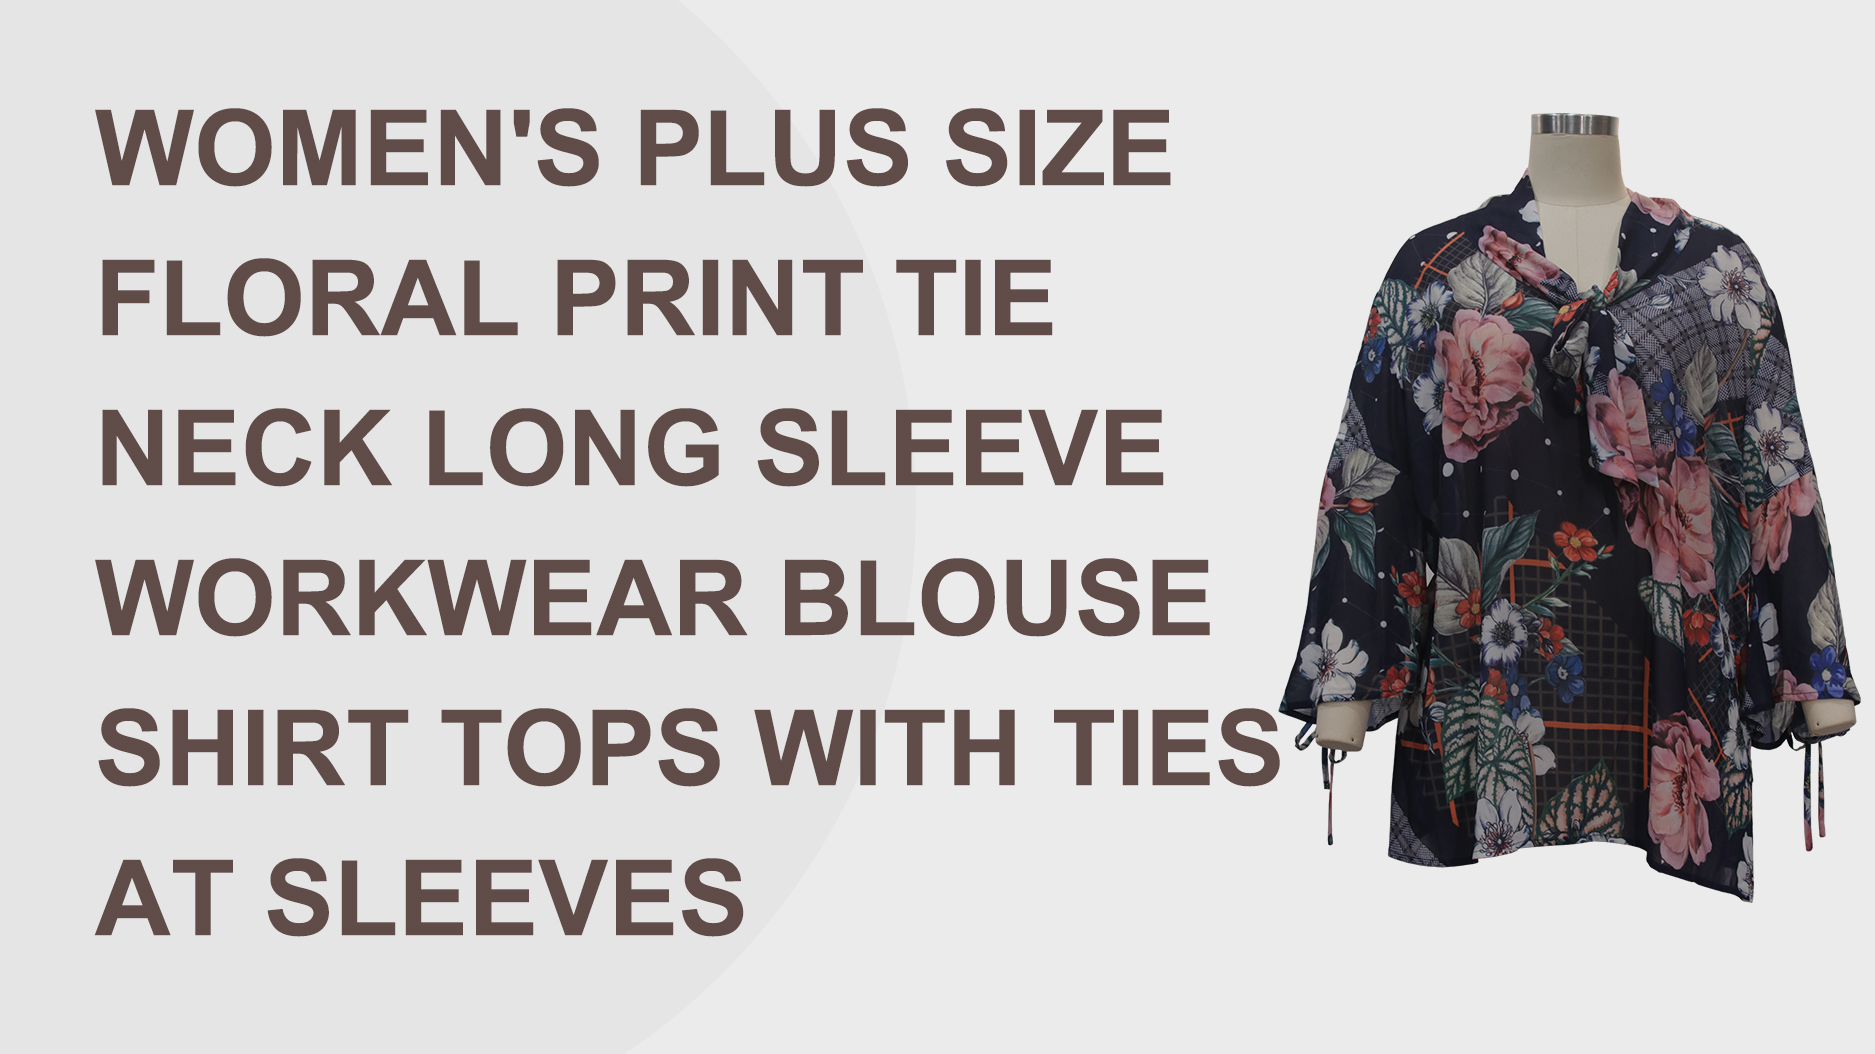 Լավագույն կանացի պլյուս չափի ծաղկային տպագրության վերնաշապիկ երկարաթև աշխատանքային հագուստի վերնաշապիկների մատակարար